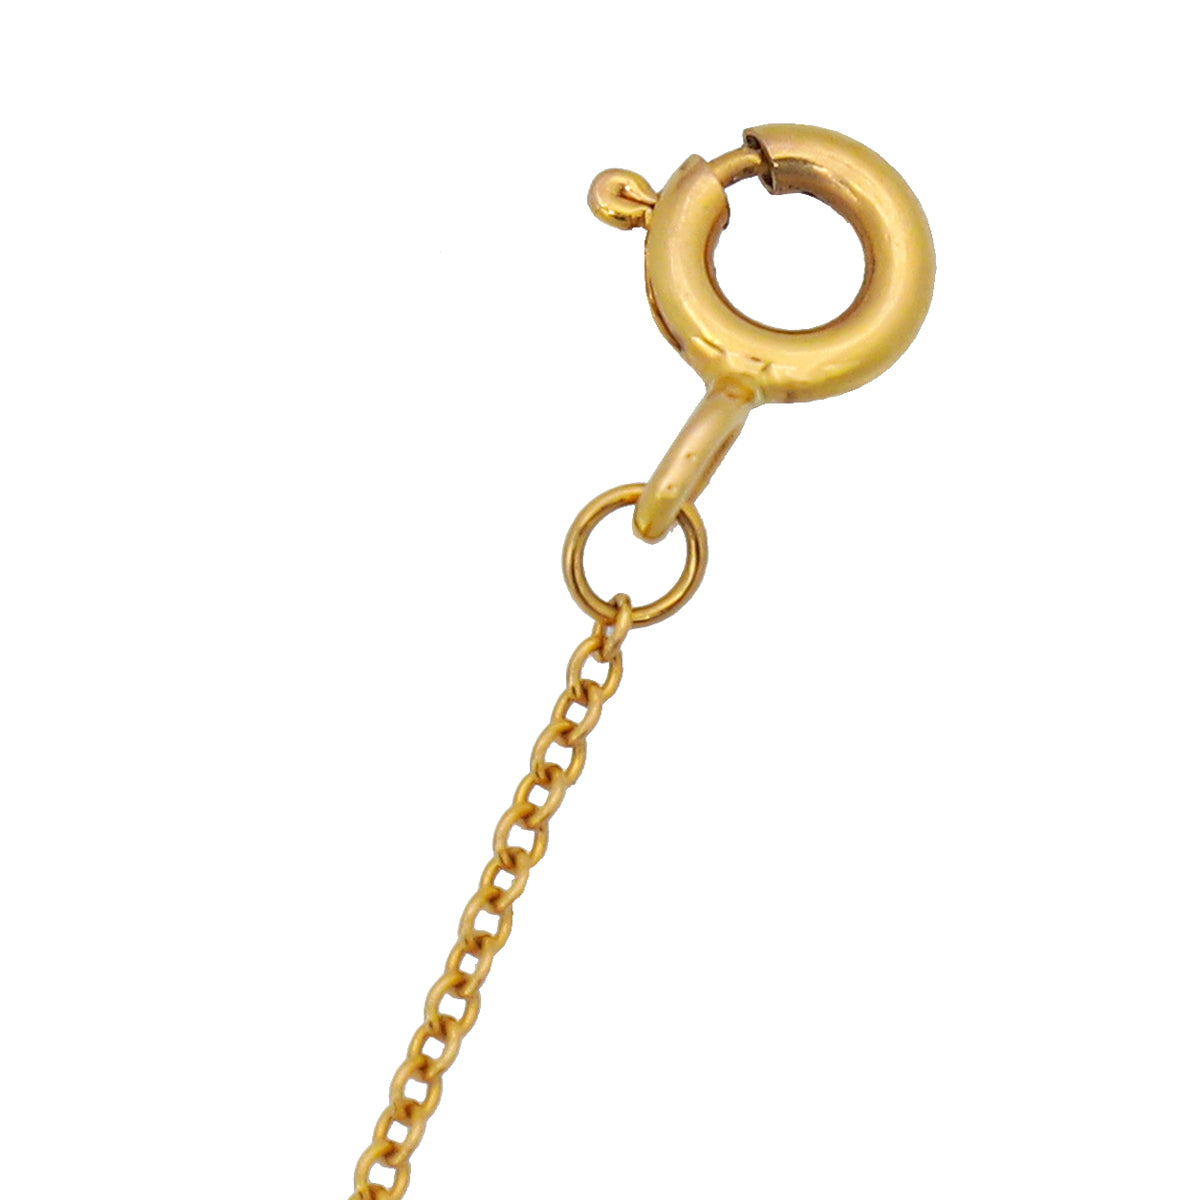 Tiffany & Co 18K Yellow Gold Diamond Heart Key Pendant Necklace